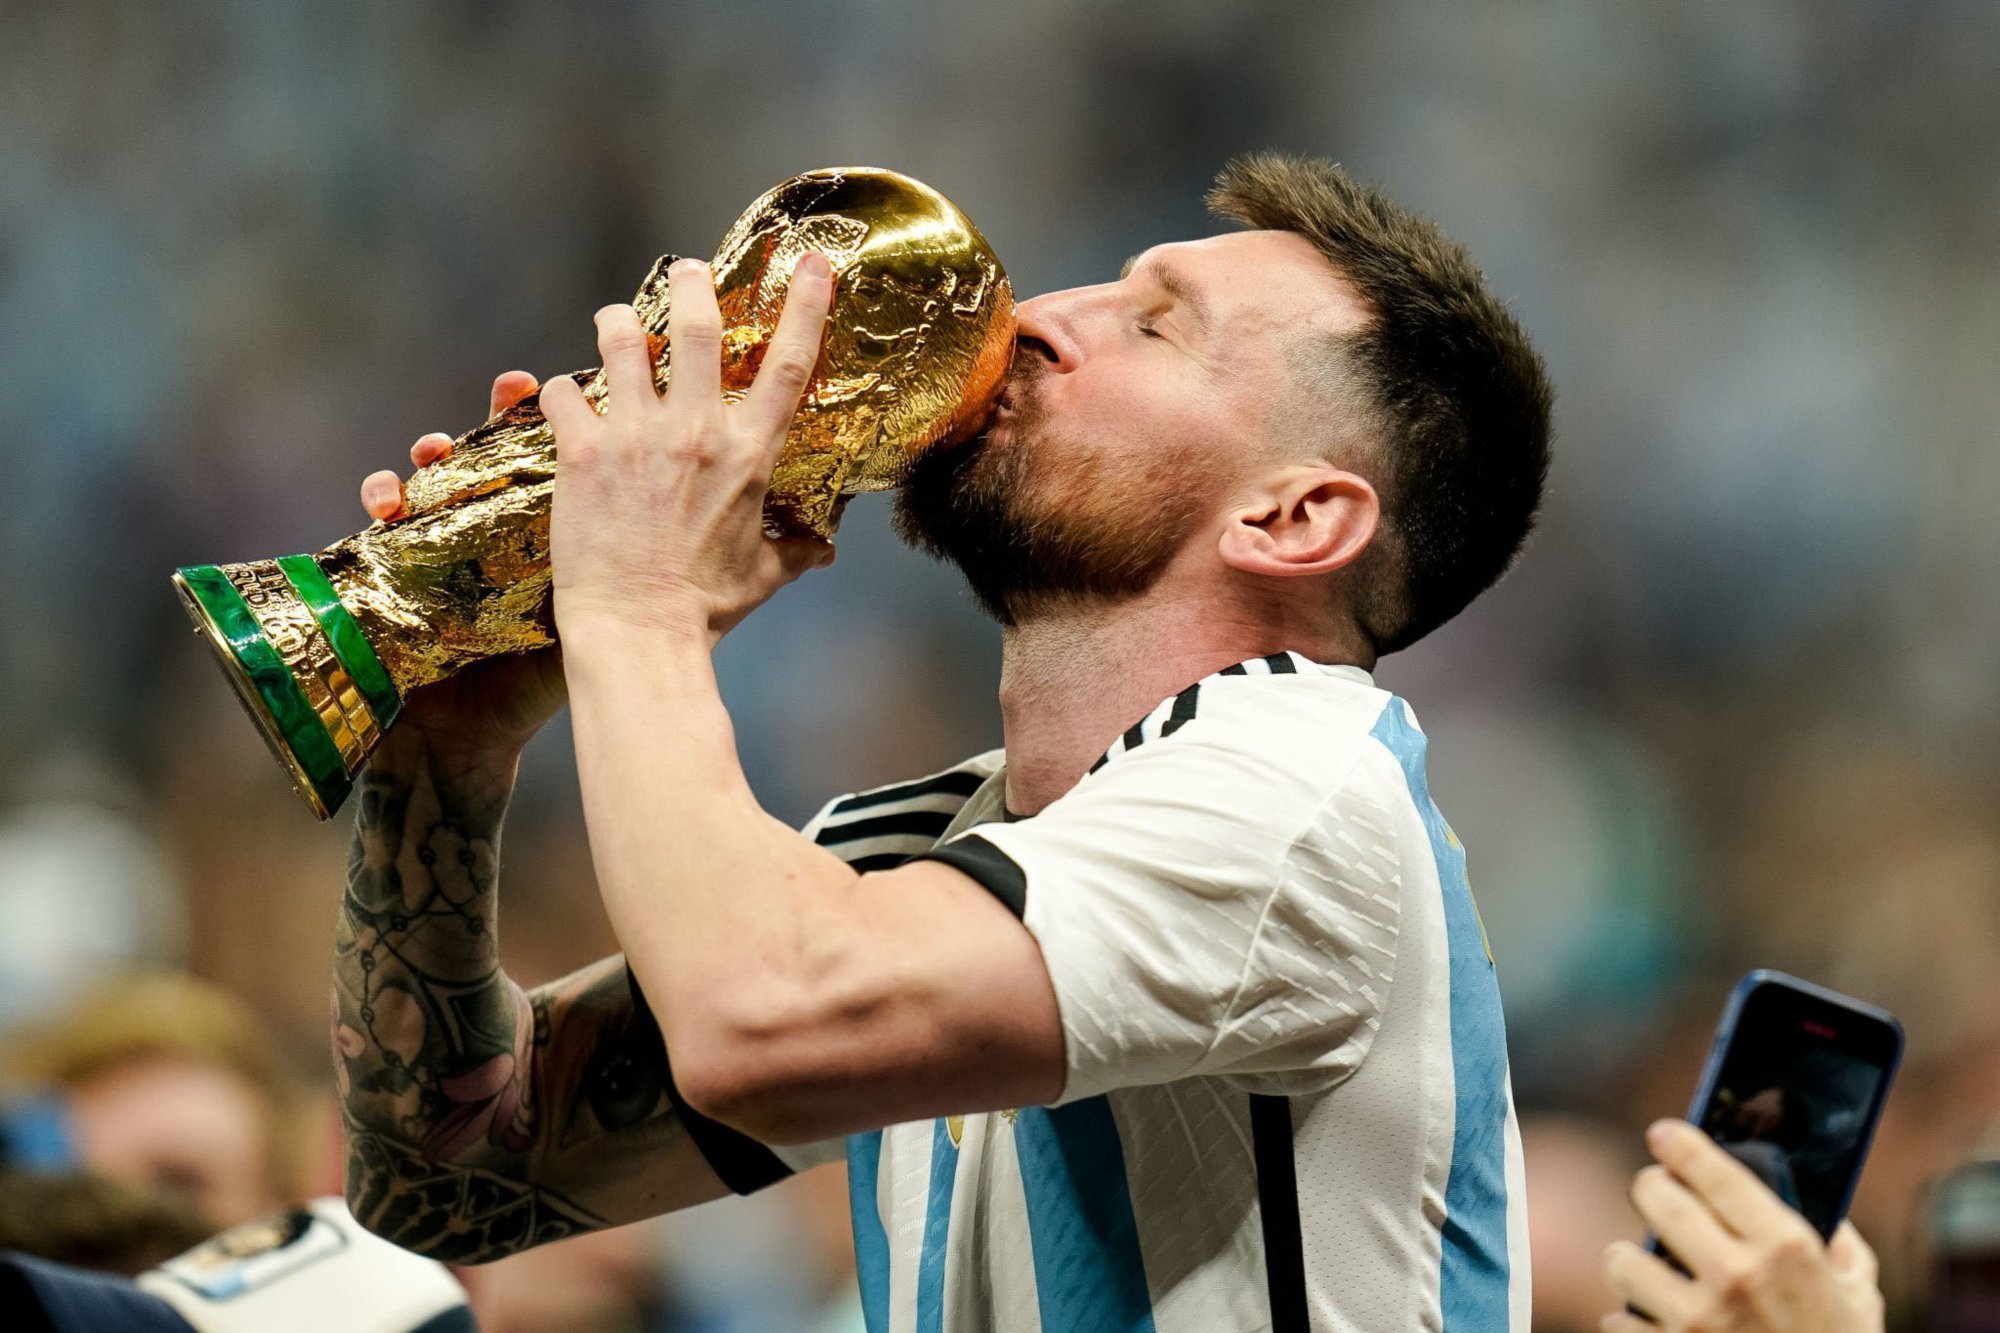 Cúp vàng luôn là niềm mơ ước của bất kỳ cầu thủ nào. Hãy xem ảnh của Messi trong trang phục đội tuyển để cảm nhận sự phấn khích của anh khi cầm trên tay chiếc cúp danh giá nhất của làng bóng đá.